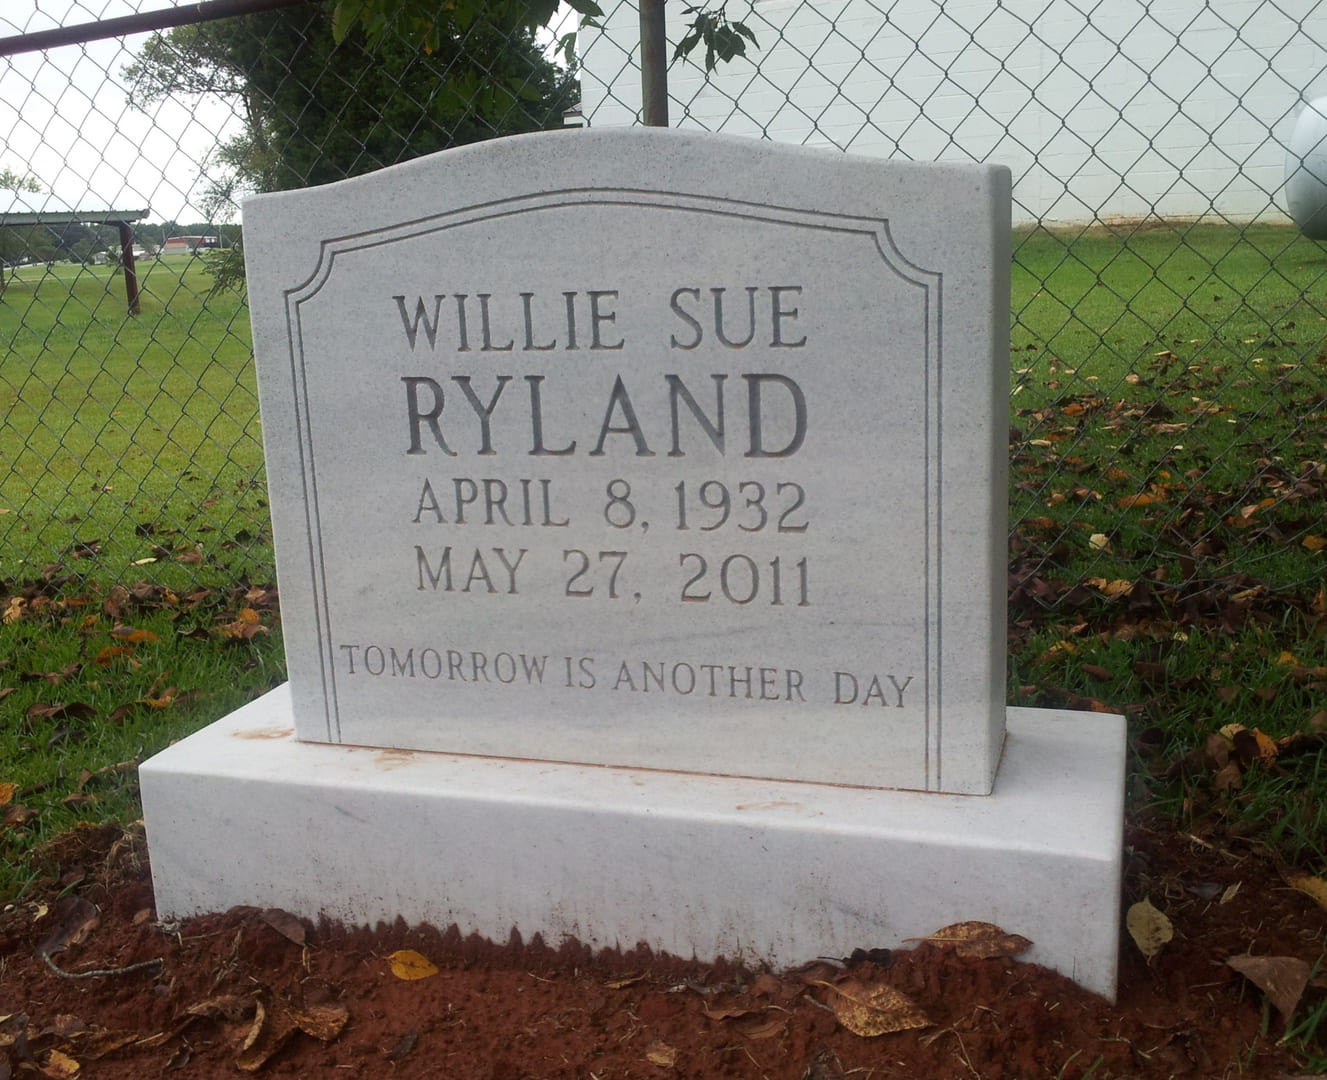 Willie Sue Ryland Memorial Block in Marble